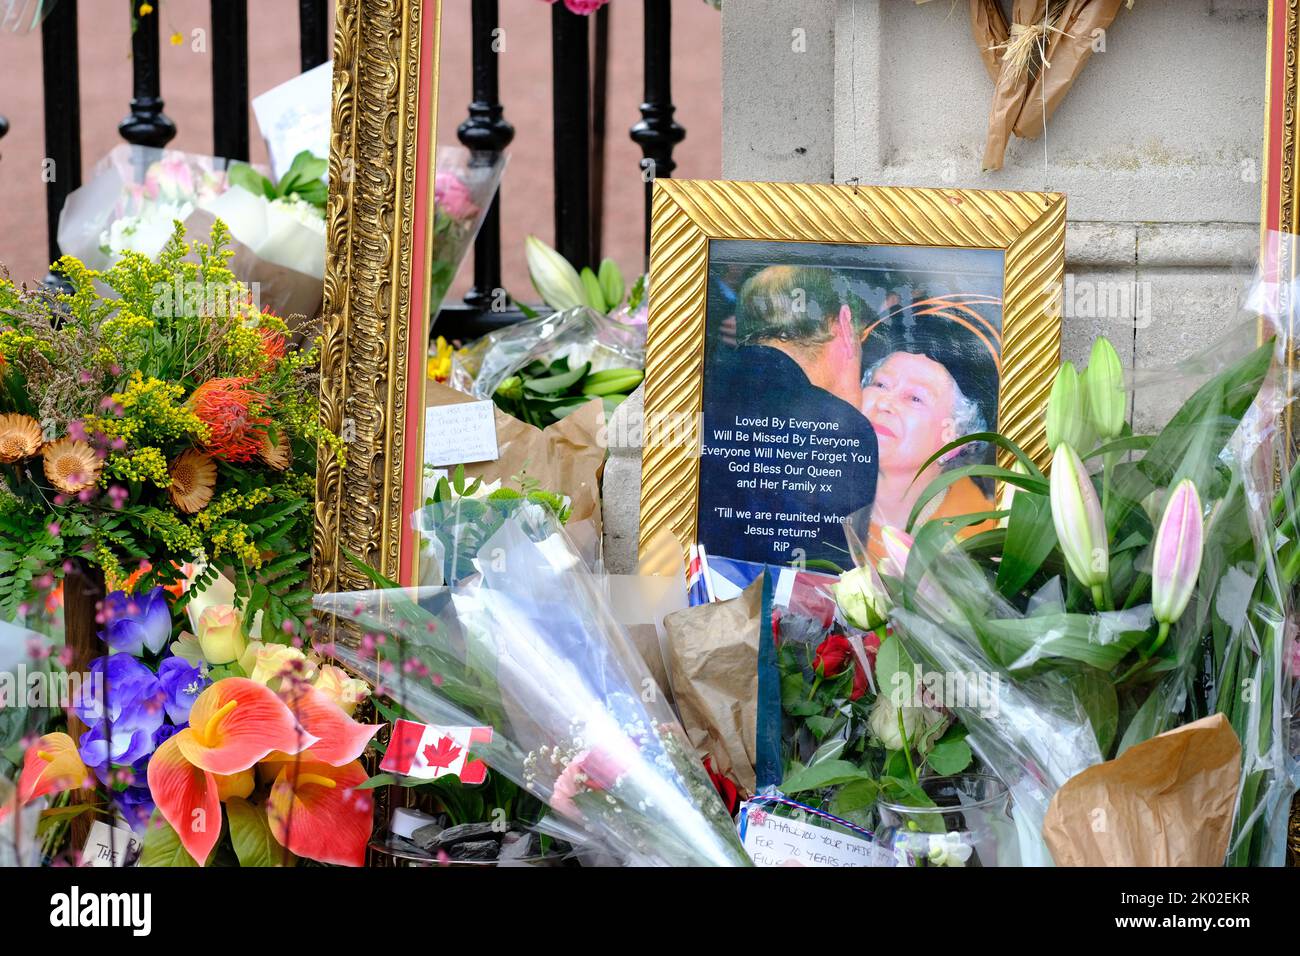 Buckingham Palace, Londres, Royaume-Uni – vendredi 9th septembre 2022 – Une photographie parmi les nombreuses fleurs laissées à l'extérieur de Buckingham Palace alors que la Grande-Bretagne pleure la mort de la reine Elizabeth II Photo Steven May / Alamy Live News Banque D'Images